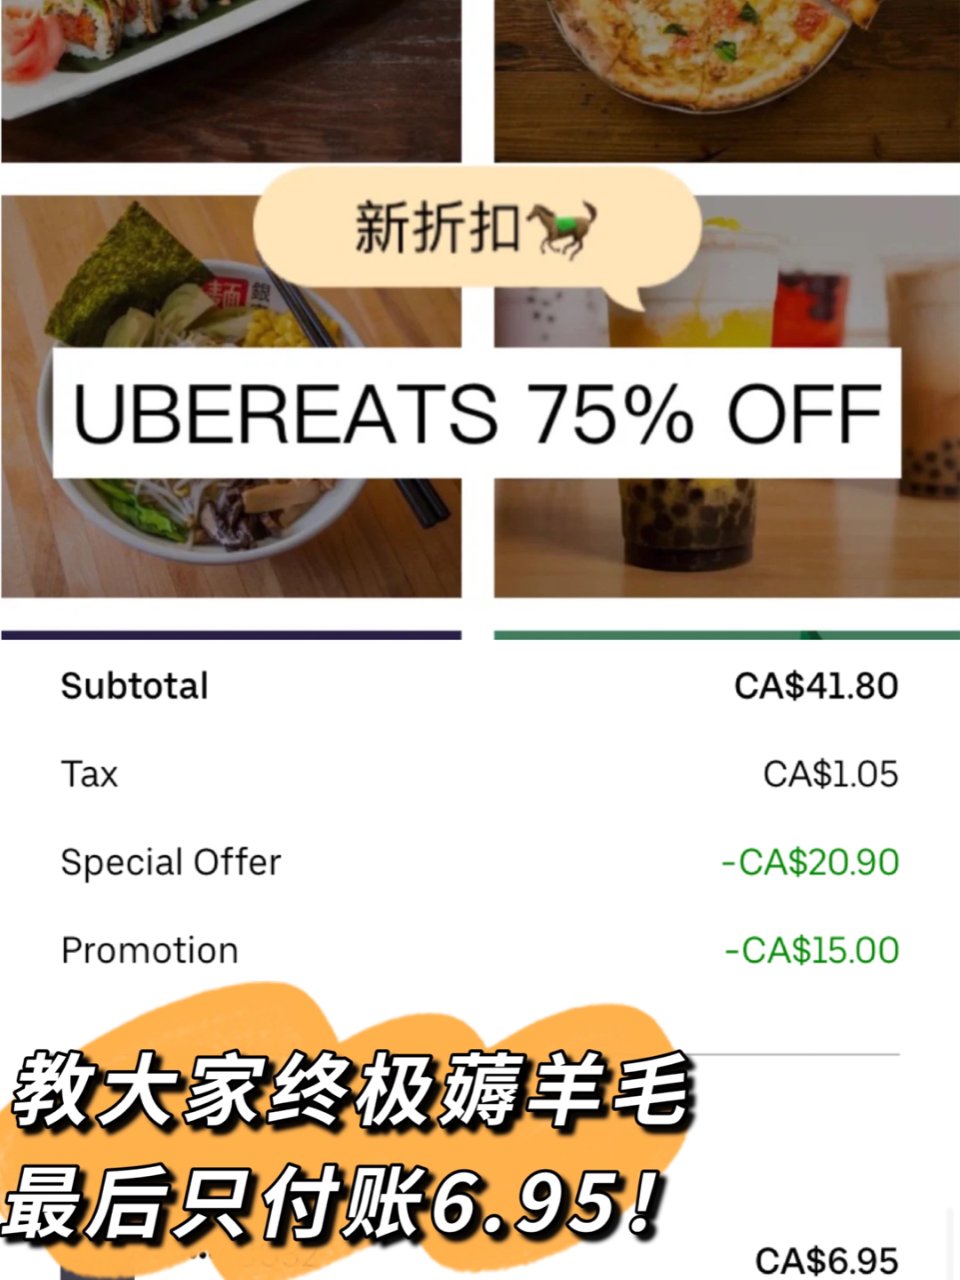 新UberEats 75%折扣+终极省💰...